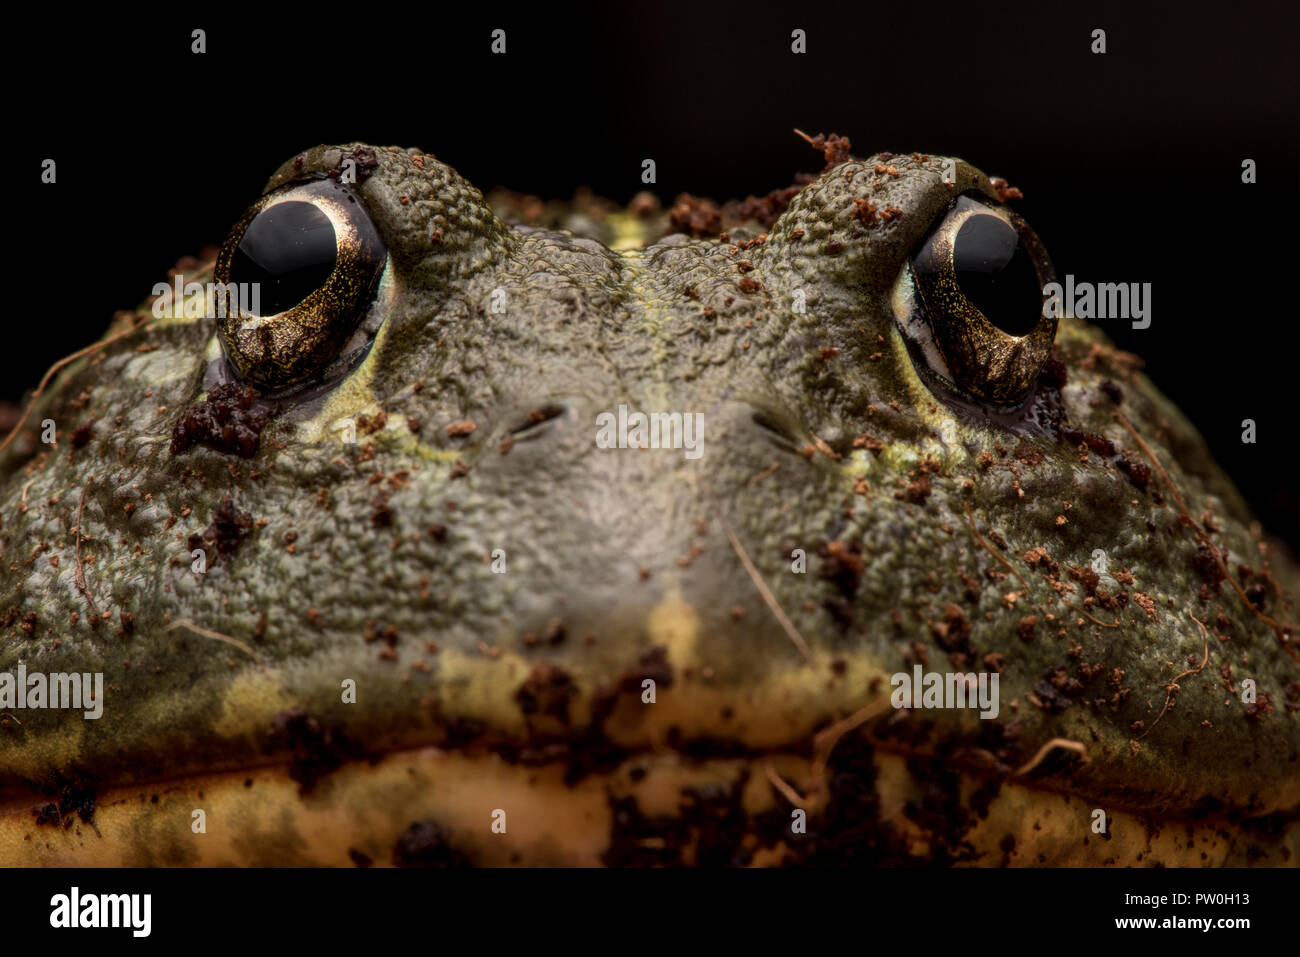 Un portrait d'un grand mâle en captivité African bull frog (Pyxicephalus adspersus) c'est ma (les photographes) animal domestique. Banque D'Images